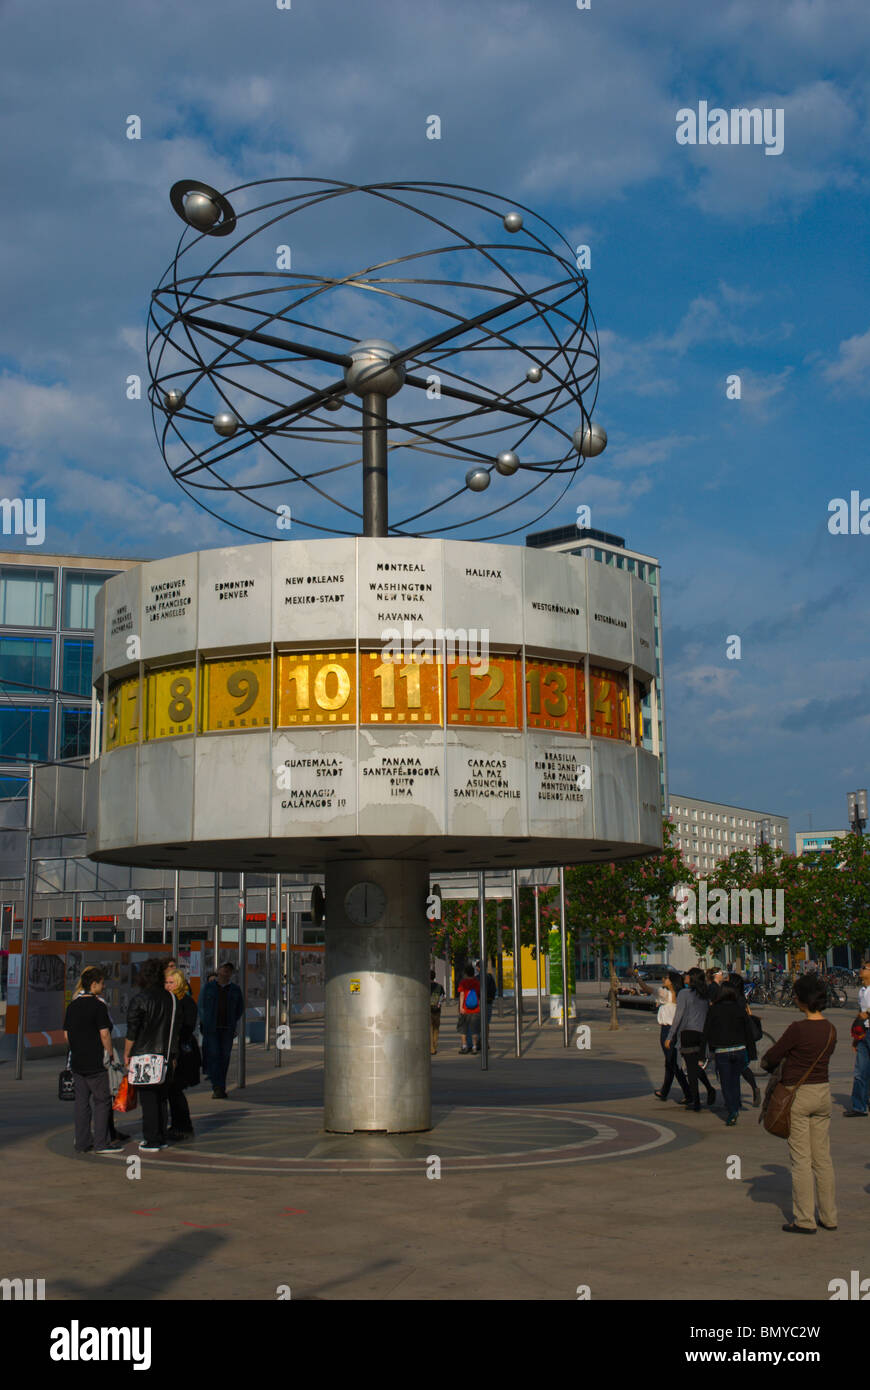 El punto de encuentro con el reloj con horario mundial Alexanderplatz  Mitte, Berlin Alemania Europa central Fotografía de stock - Alamy